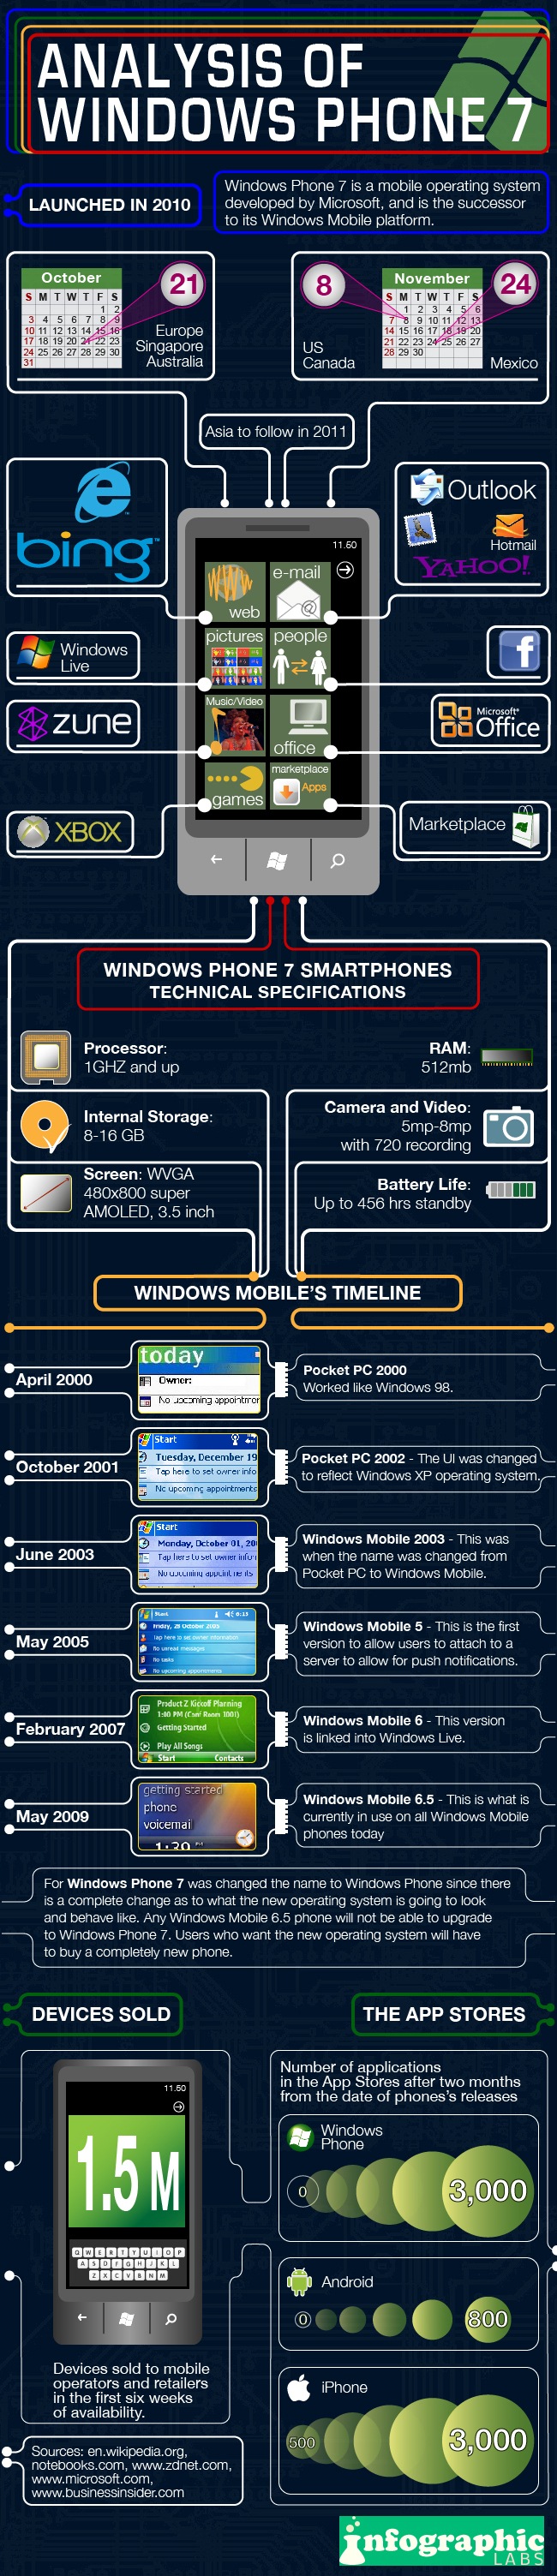 Infographie : Historique de Windows Phone 7